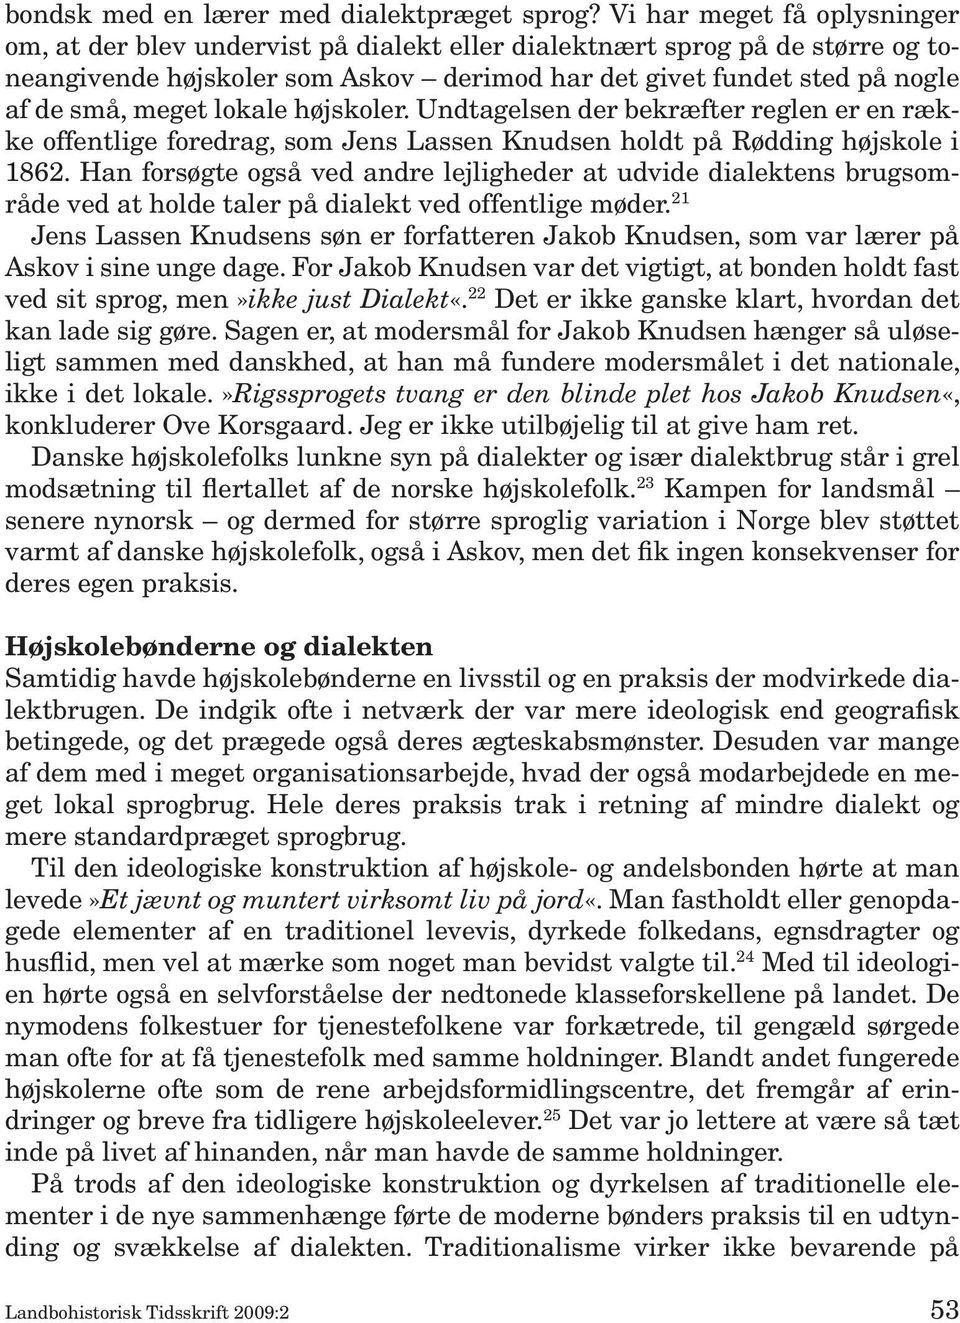 lokale højskoler. Undtagelsen der bekræfter reglen er en række offentlige foredrag, som Jens Lassen Knudsen holdt på Rødding højskole i 1862.